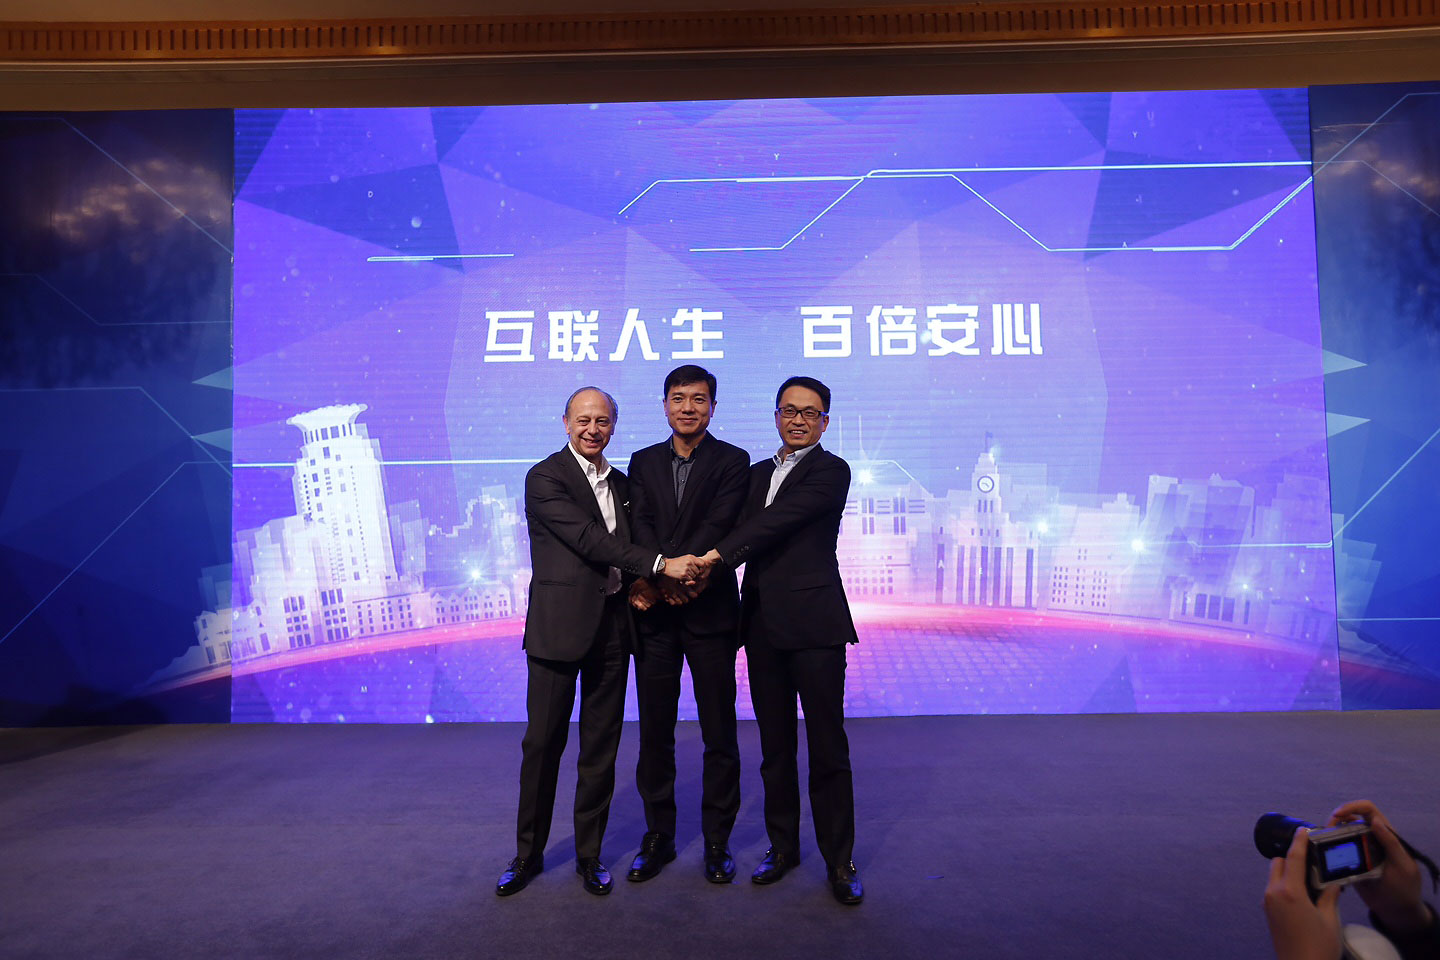 Allianz, Baidu und Hillhouse vereinbaren Joint Venture